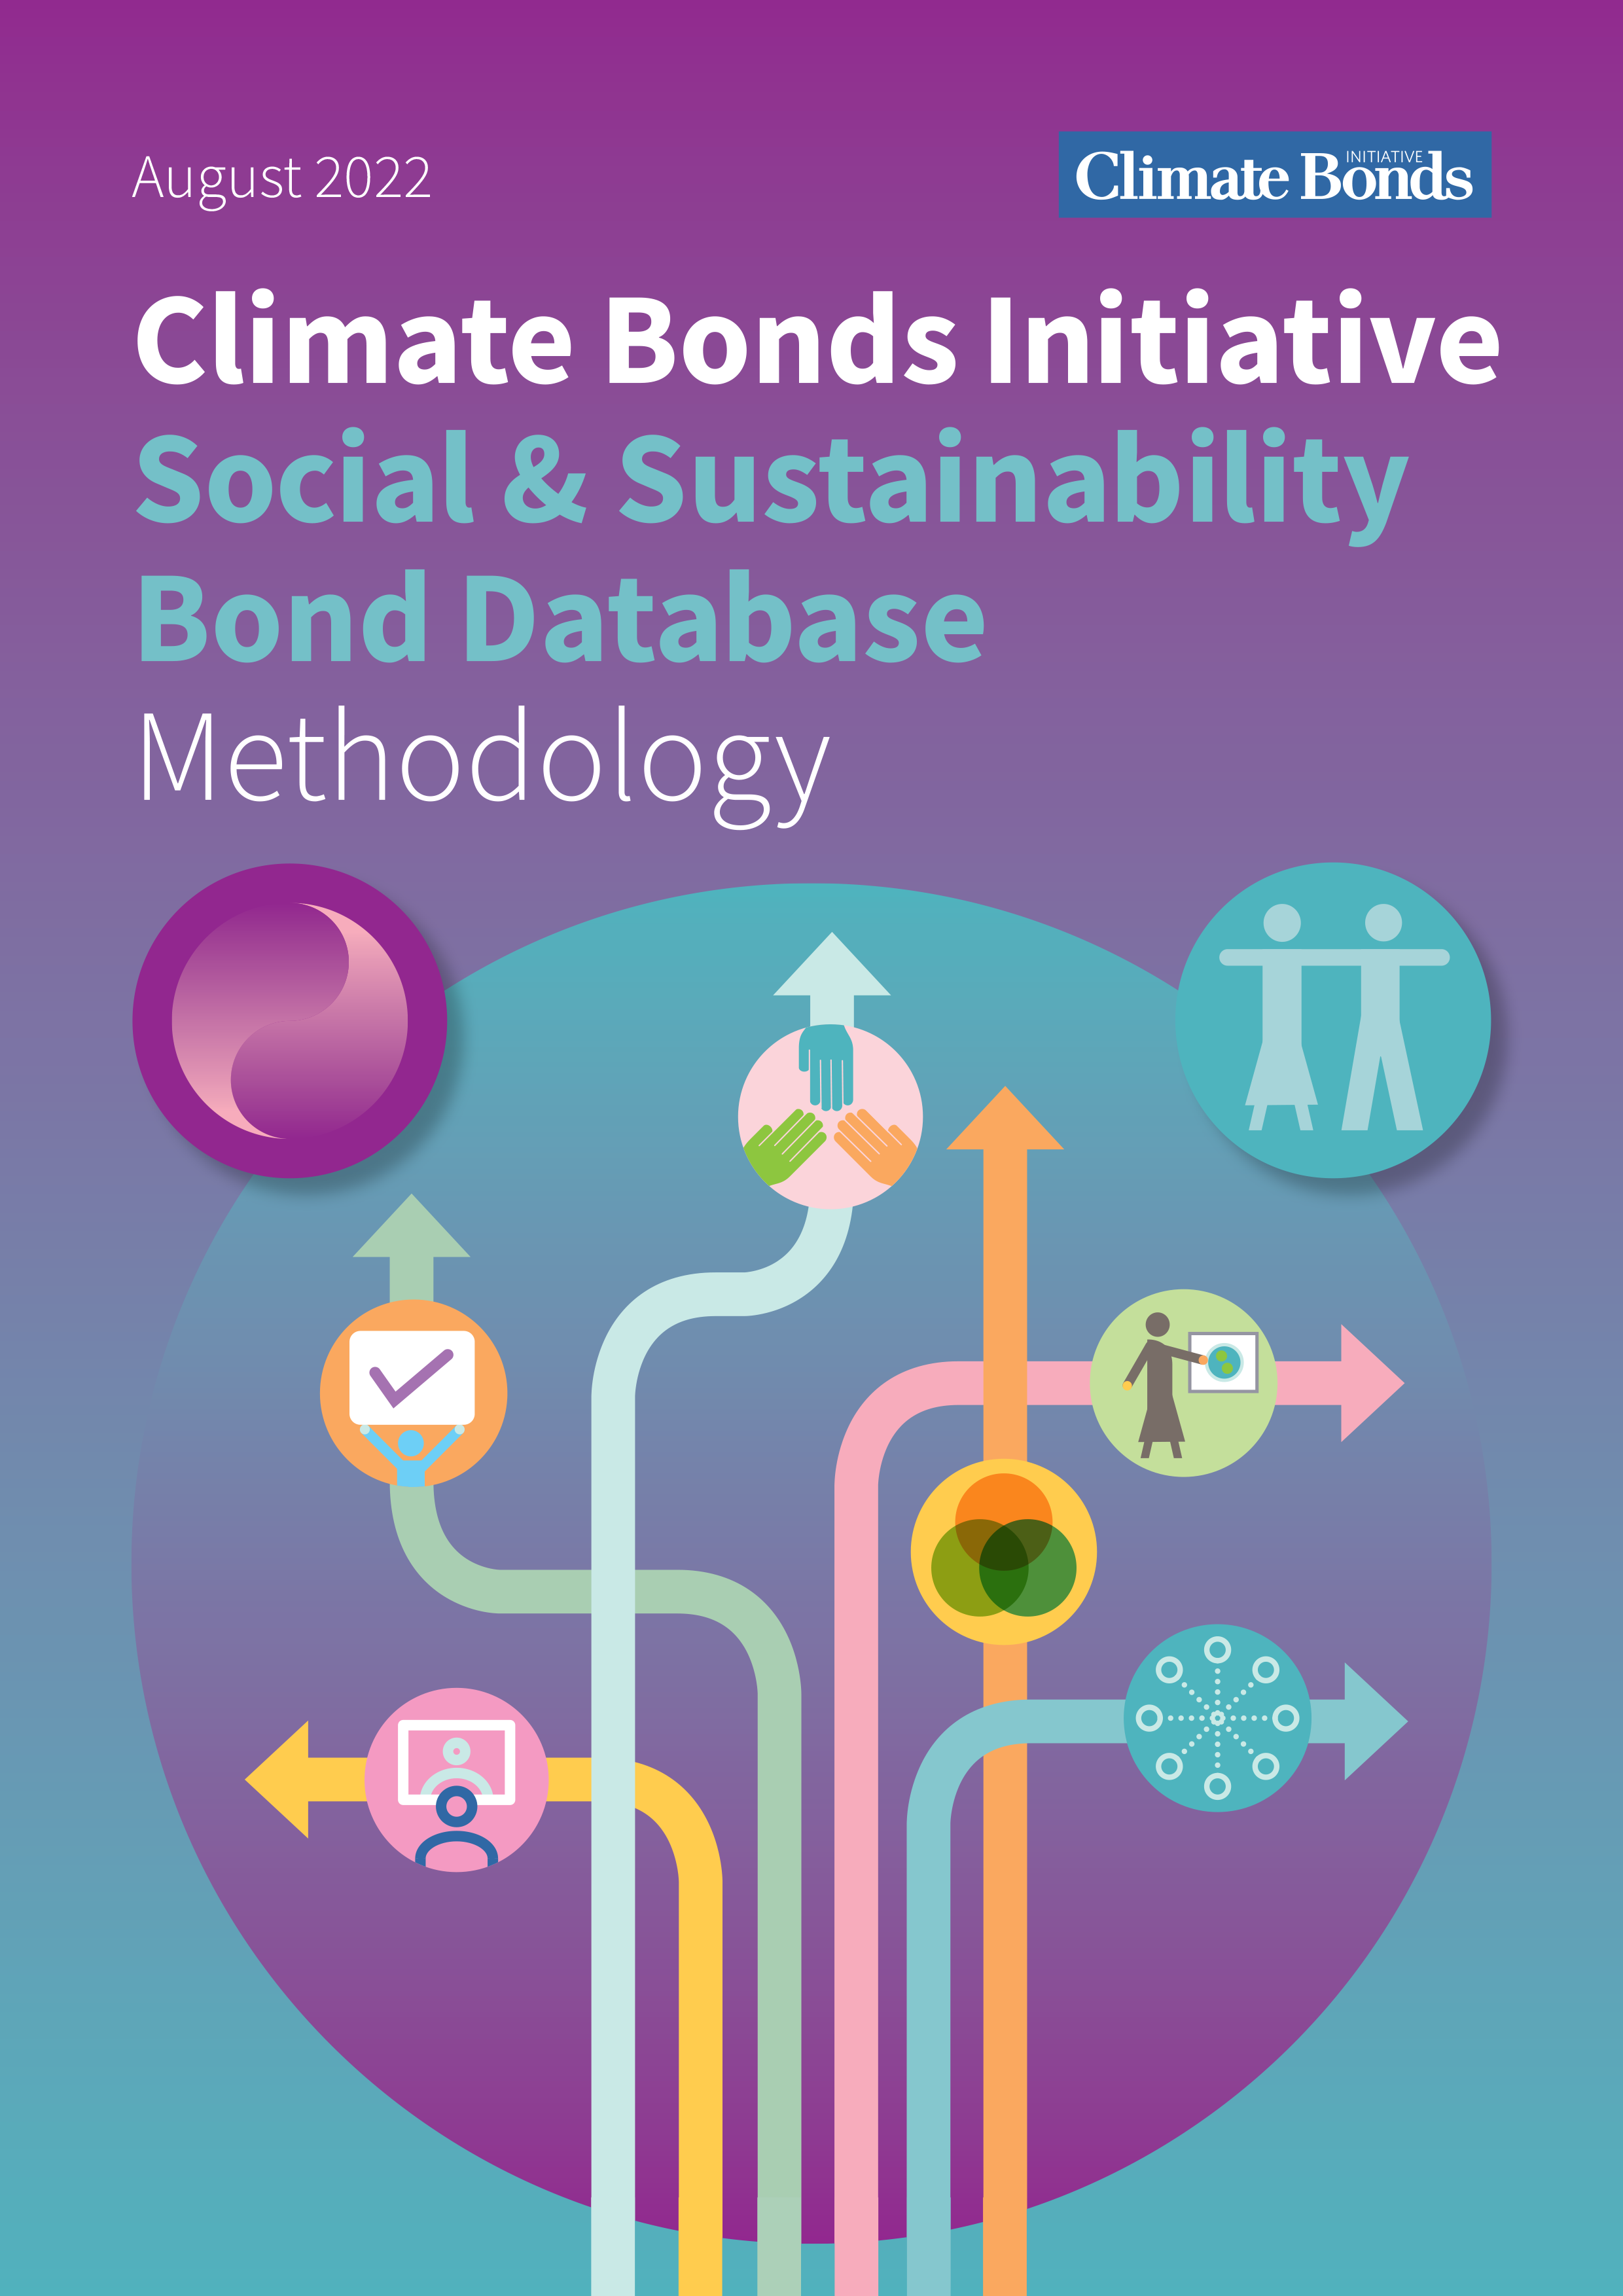 Social & Sustainability Bond Database Methodology